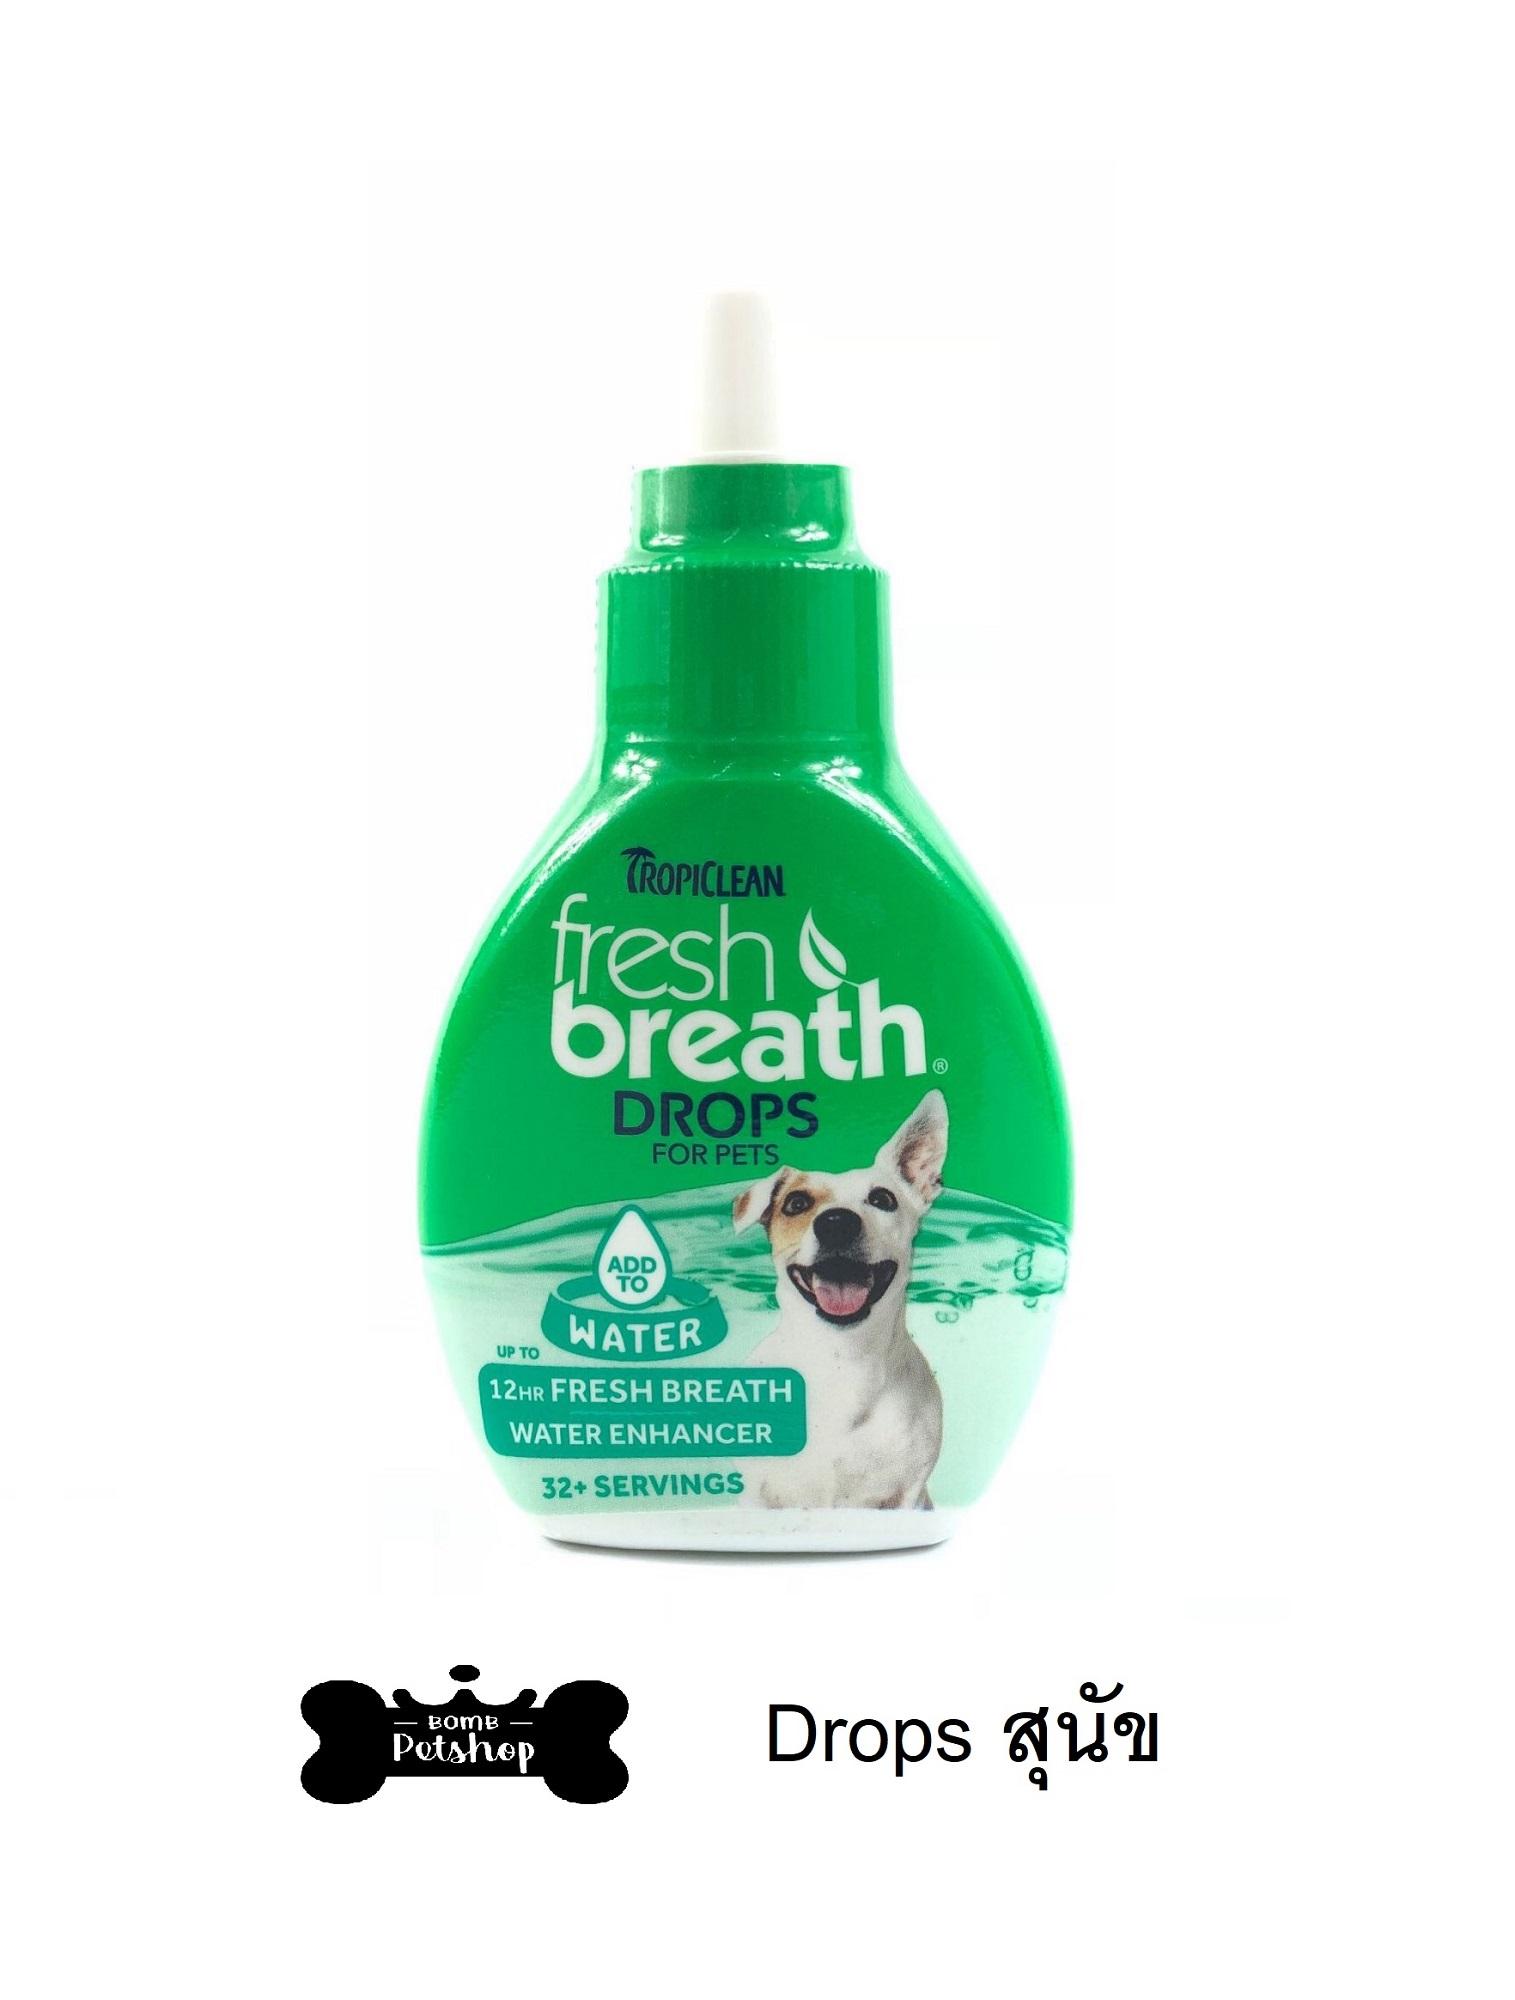 Tropiclean fresh breath Drops for Dogs ผลิตภัณฑ์ลดกลิ่นปาก หยดผสมน้ำ ดับกลิ่นปาก สำหรับสุนัข  65ml